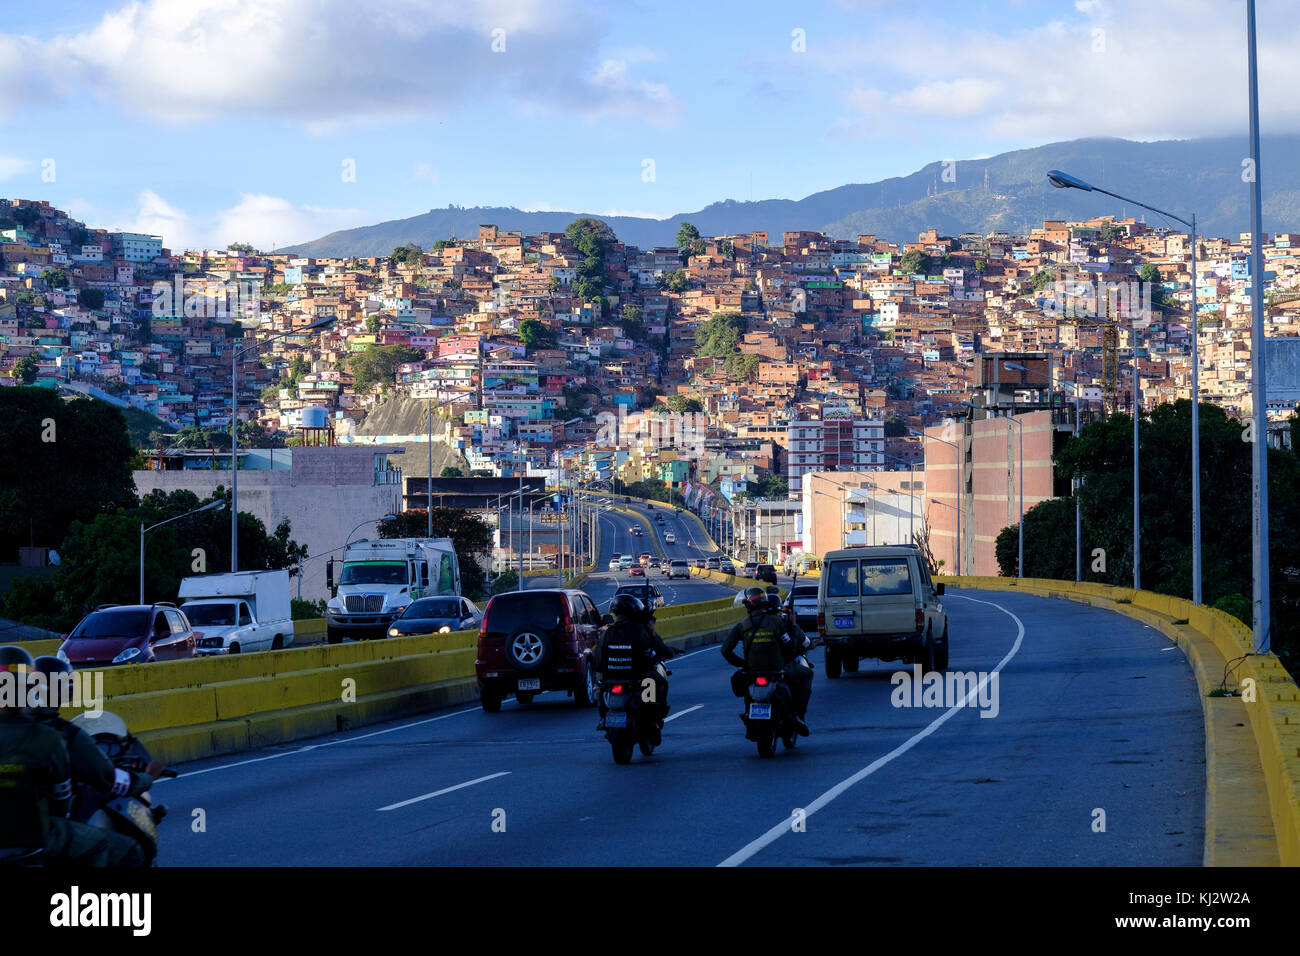 Le Venezuela, Santiago de Leon de Caracas : Guzmán‡n Blanco bidonvilles dans la ville haute et les membres de la Garde nationale à cheval sur la route motos Banque D'Images